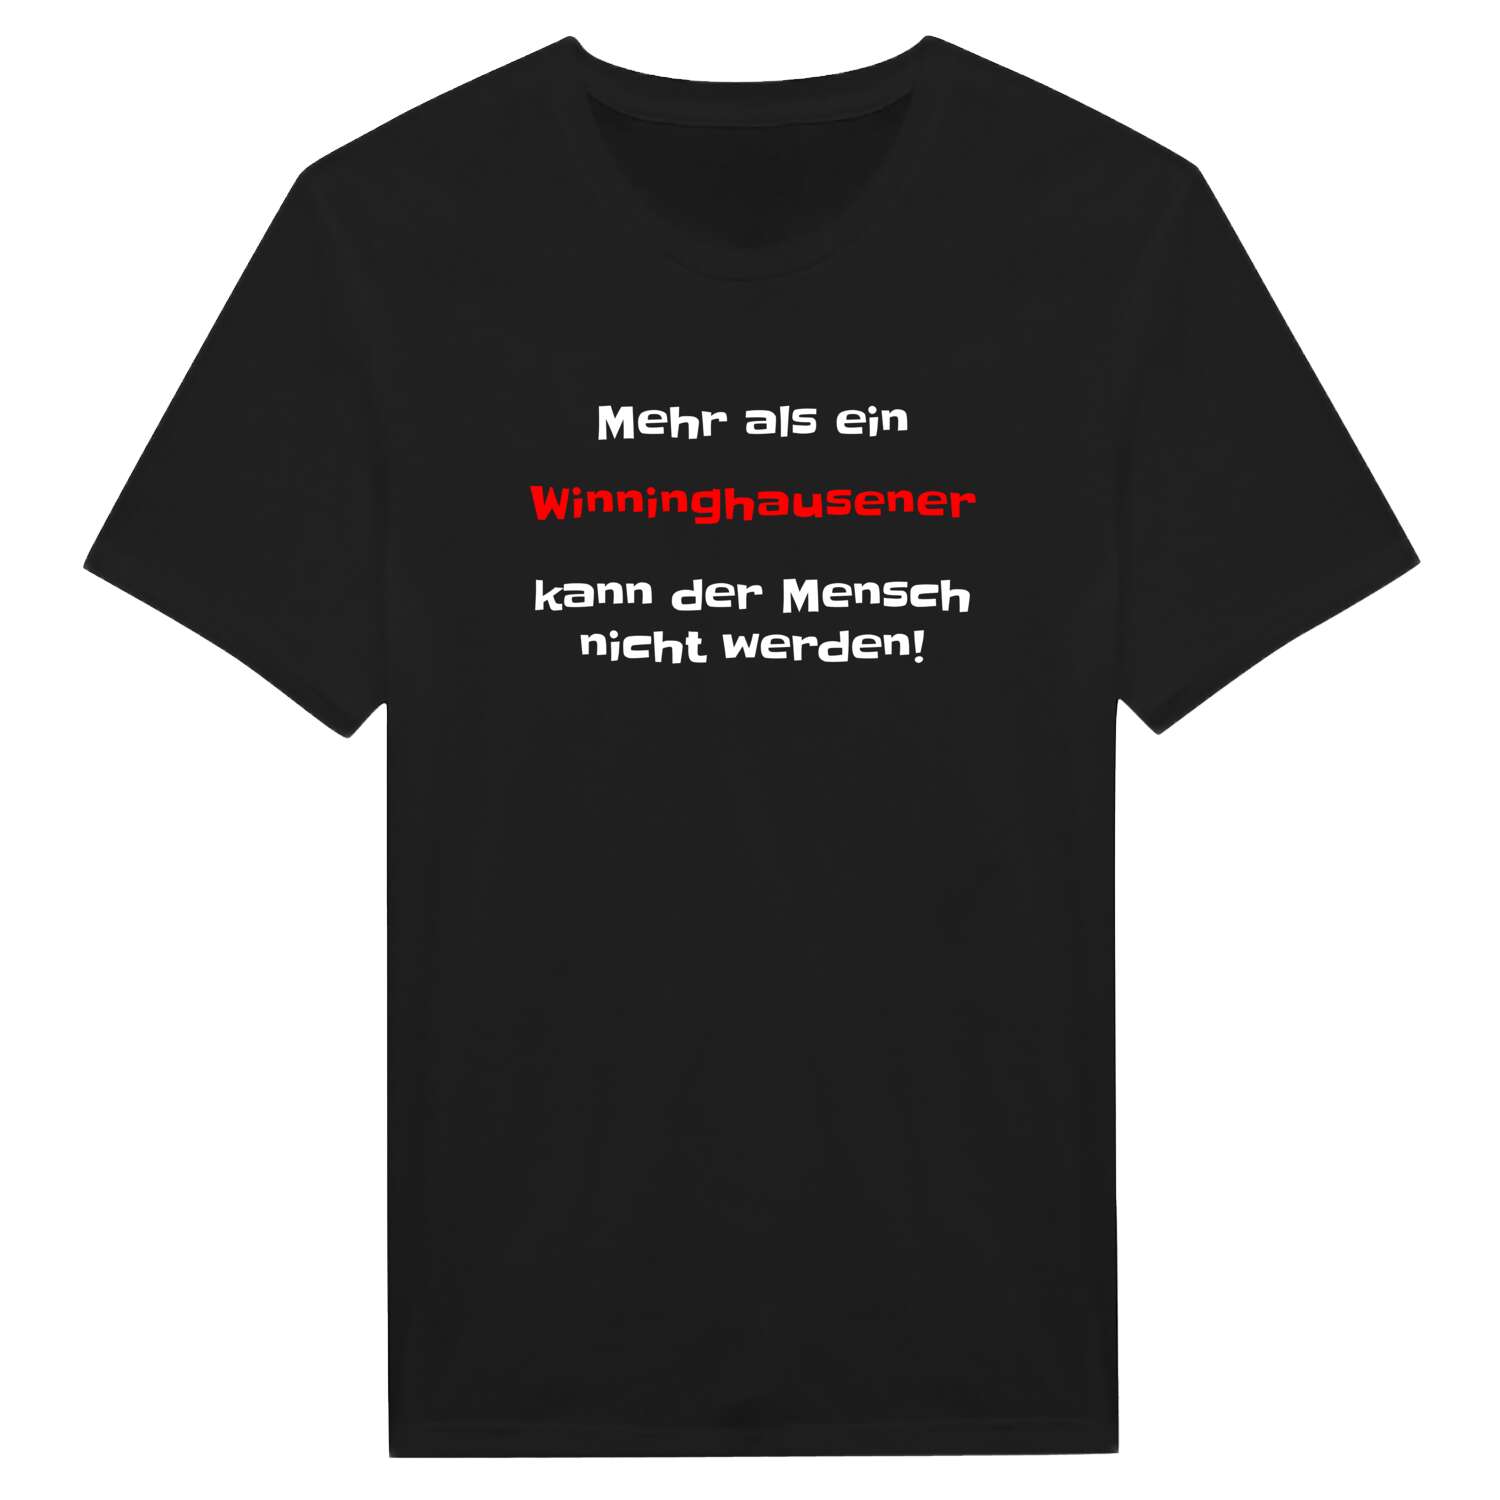 Winninghausen T-Shirt »Mehr als ein«